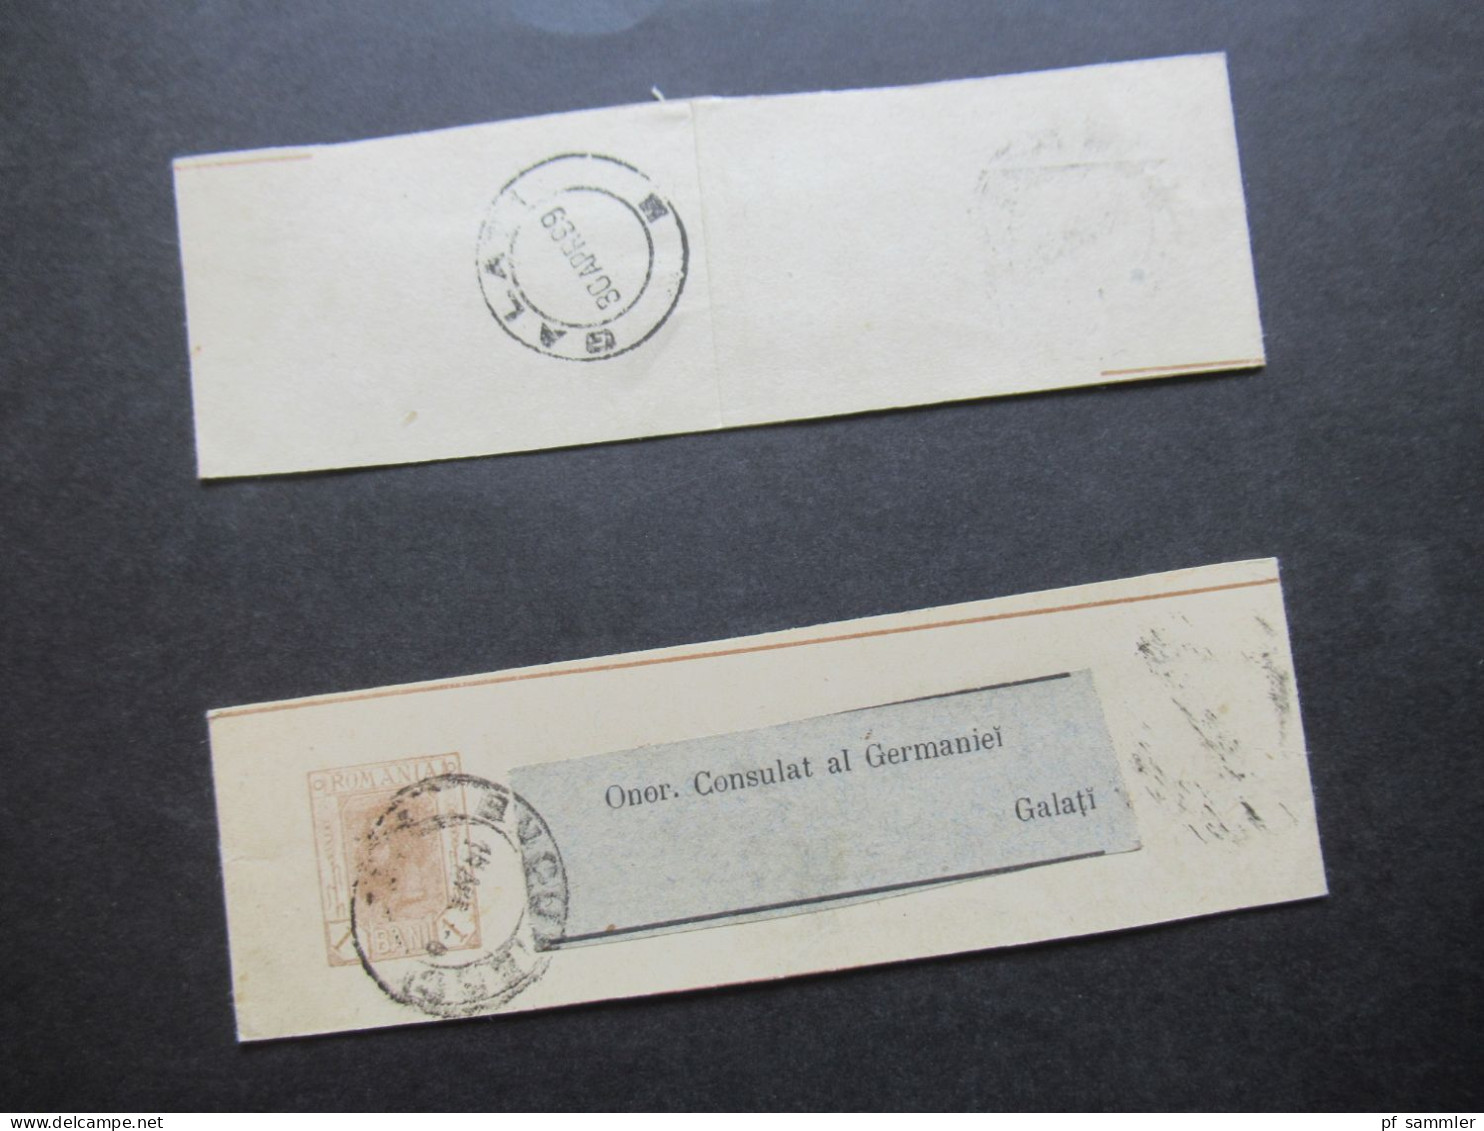 Rumänien 1899 Ganzsachen / 2x Streifband Mit Adressaufkleber Onor. Consulat Al Germaniei Galati - Ganzsachen